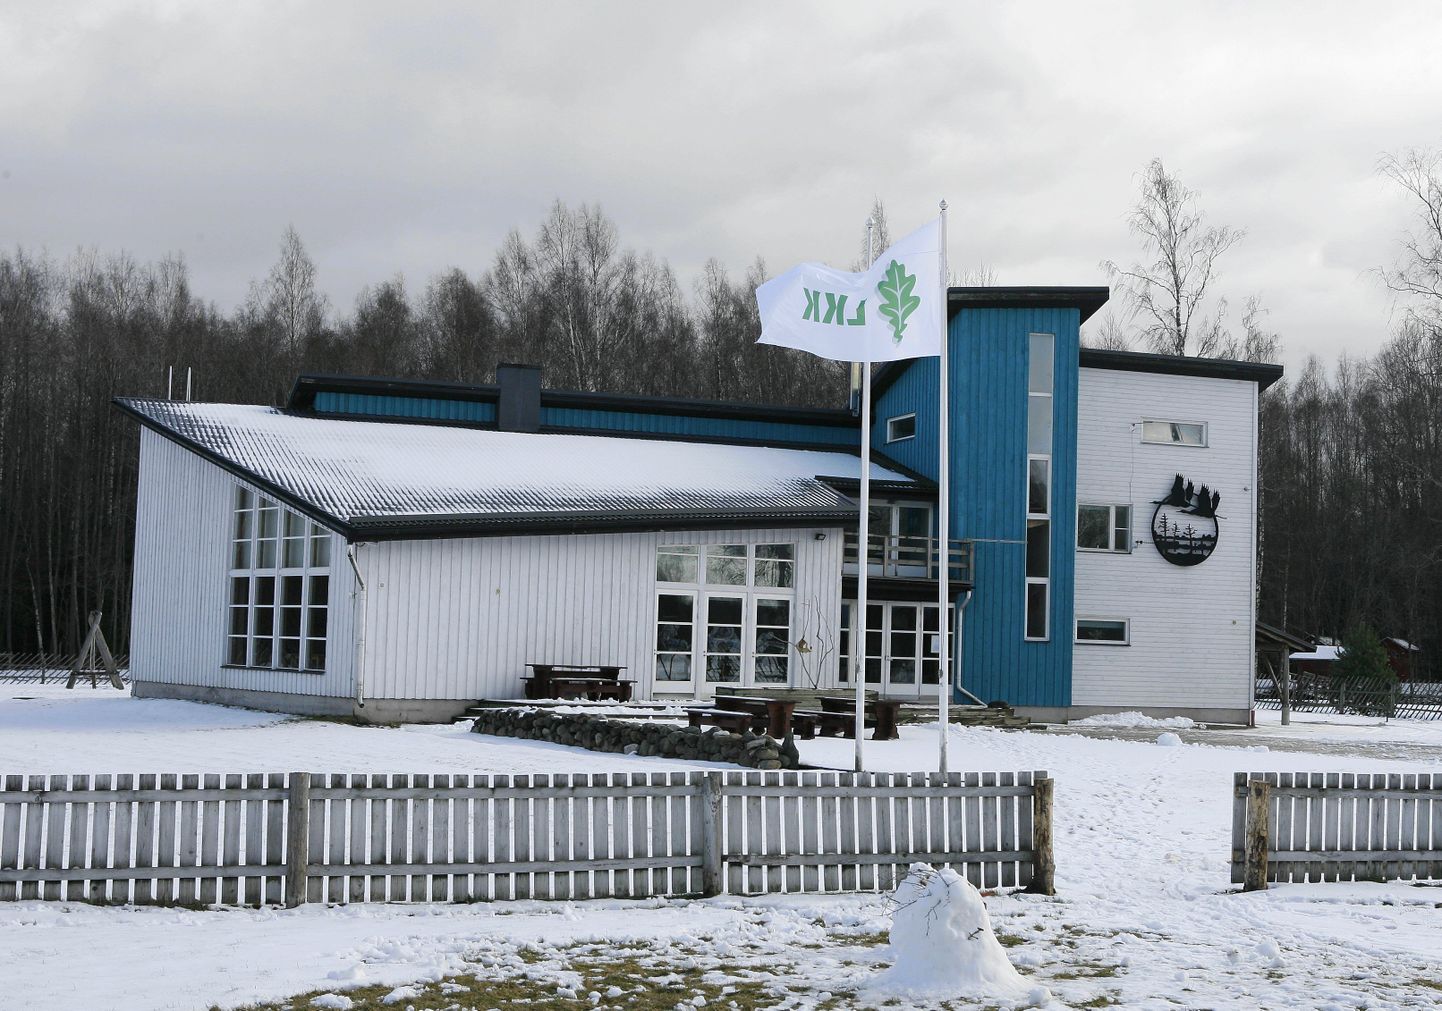 Looduskaitsekeskuse lipp sai Soomaa külastuskeskuse ees lehvida vaid kolm aastat, sest järjekordne reform kaotas ka selle noorukese asutuse.